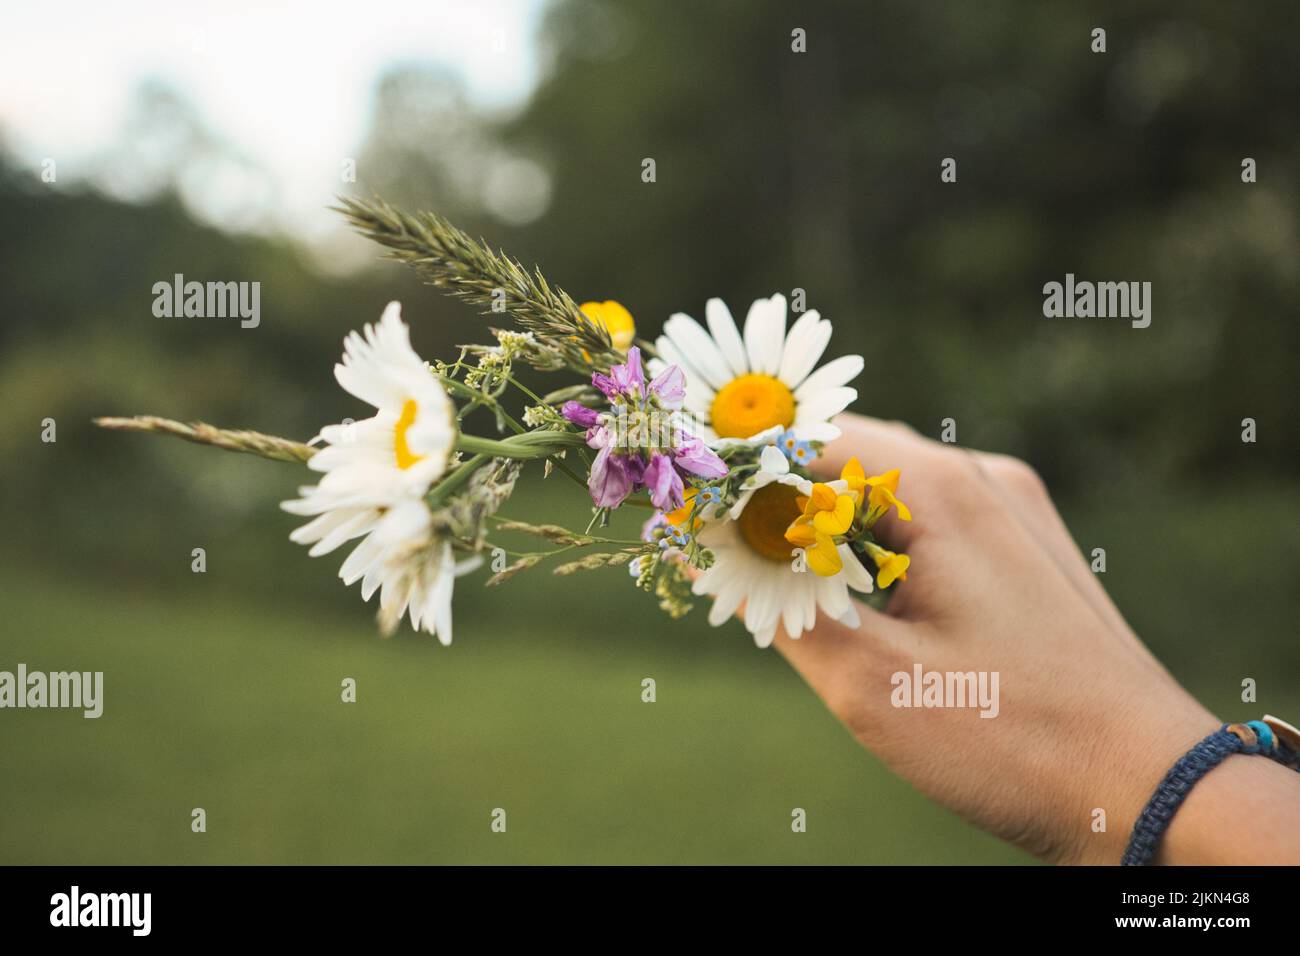 Ein handklammernder Strauß aus Gänseblümchen, Vergissmeinnicht und anderen Frühlingsblumen Stockfoto